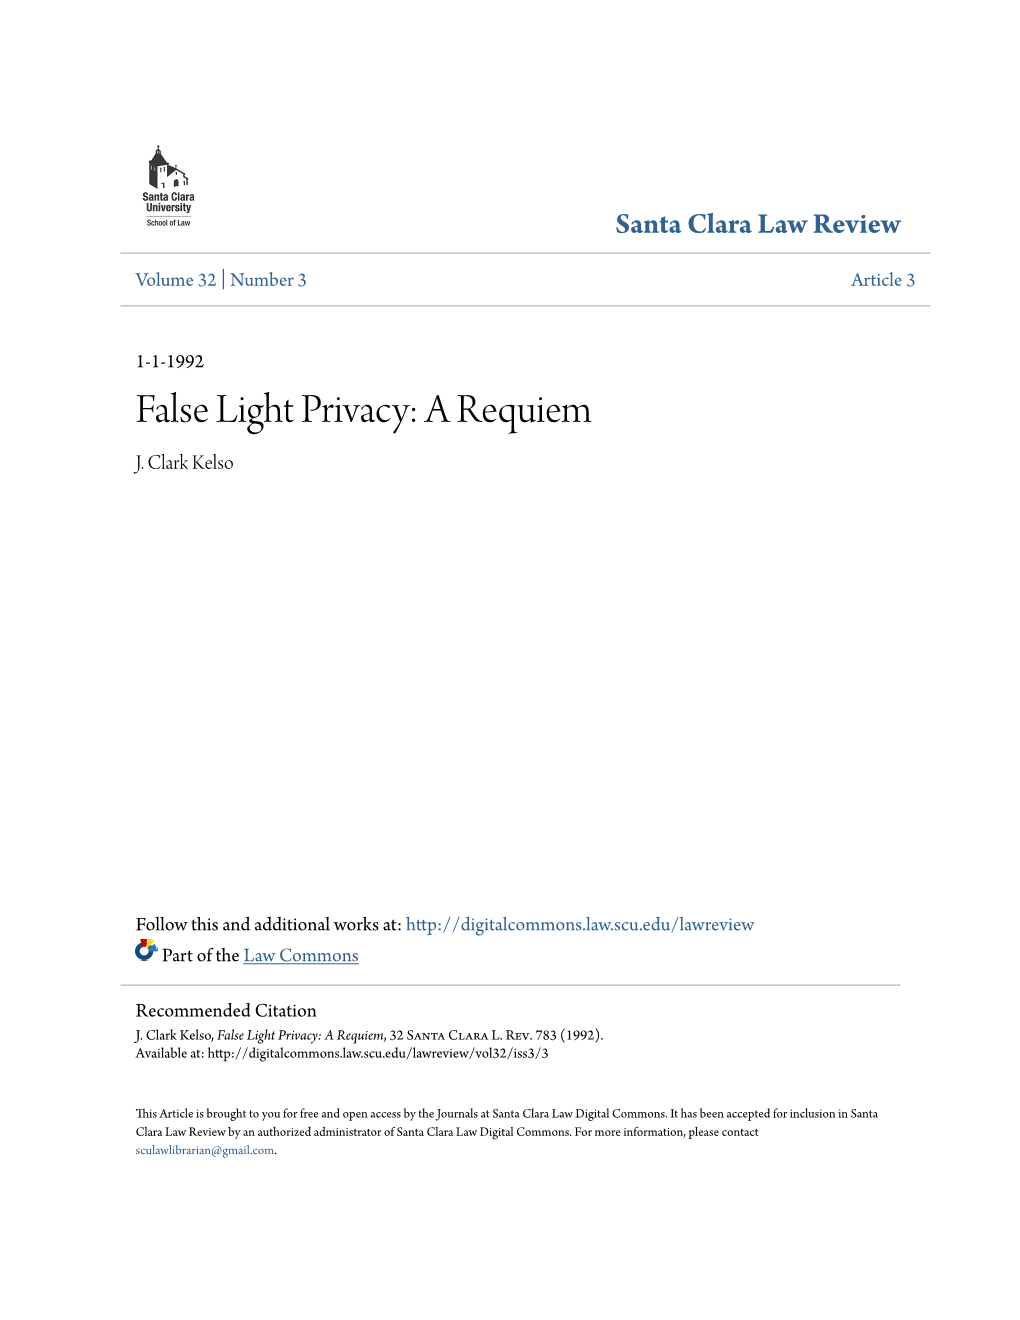 False Light Privacy: a Requiem J